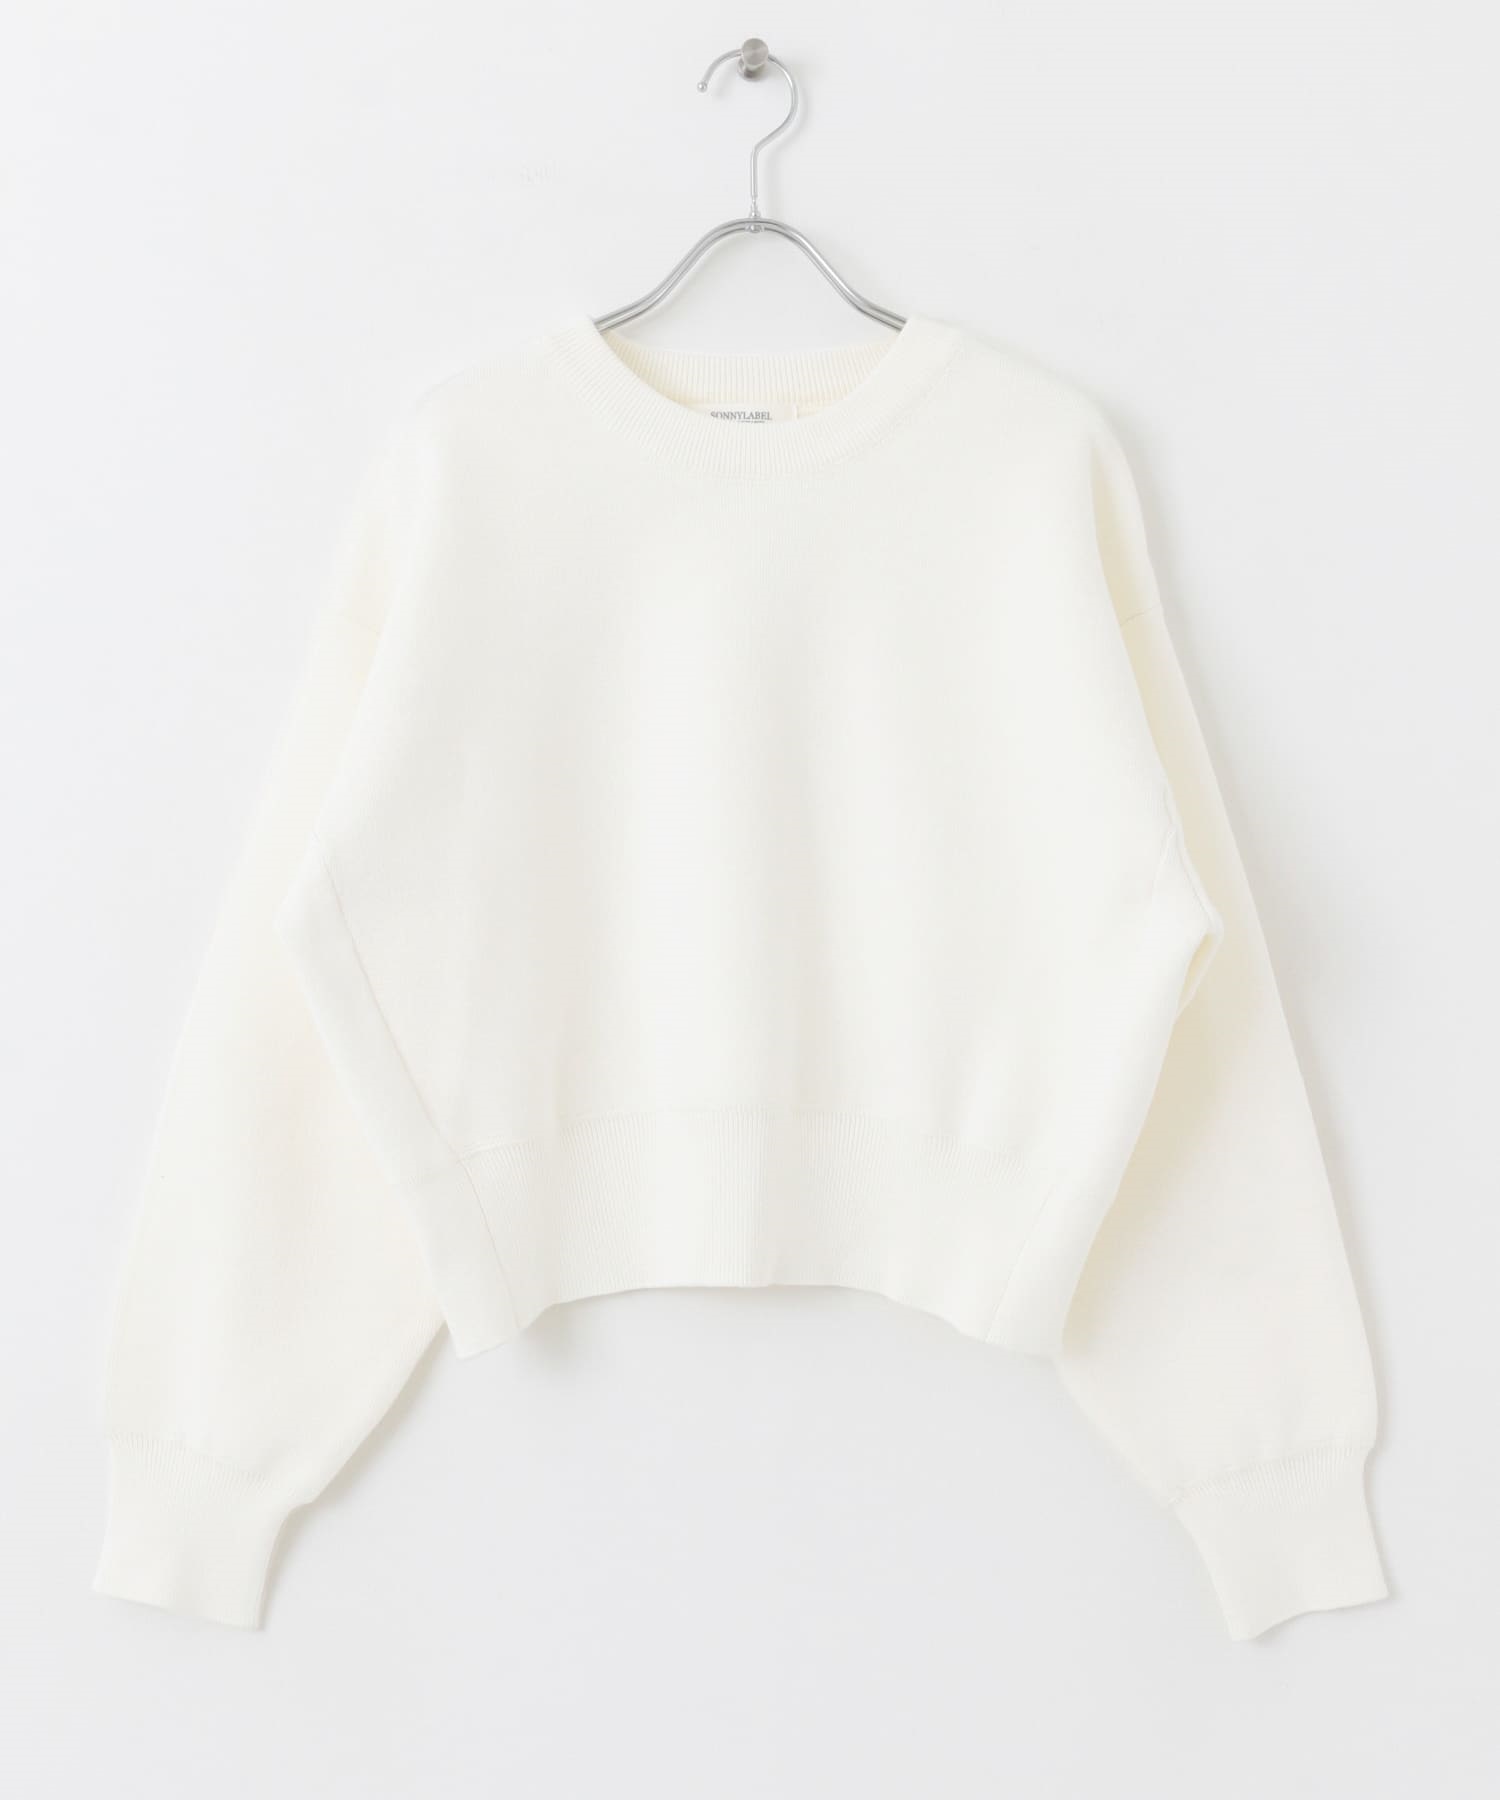 休閒感針織衫(米色-FREE-OFF WHITE)